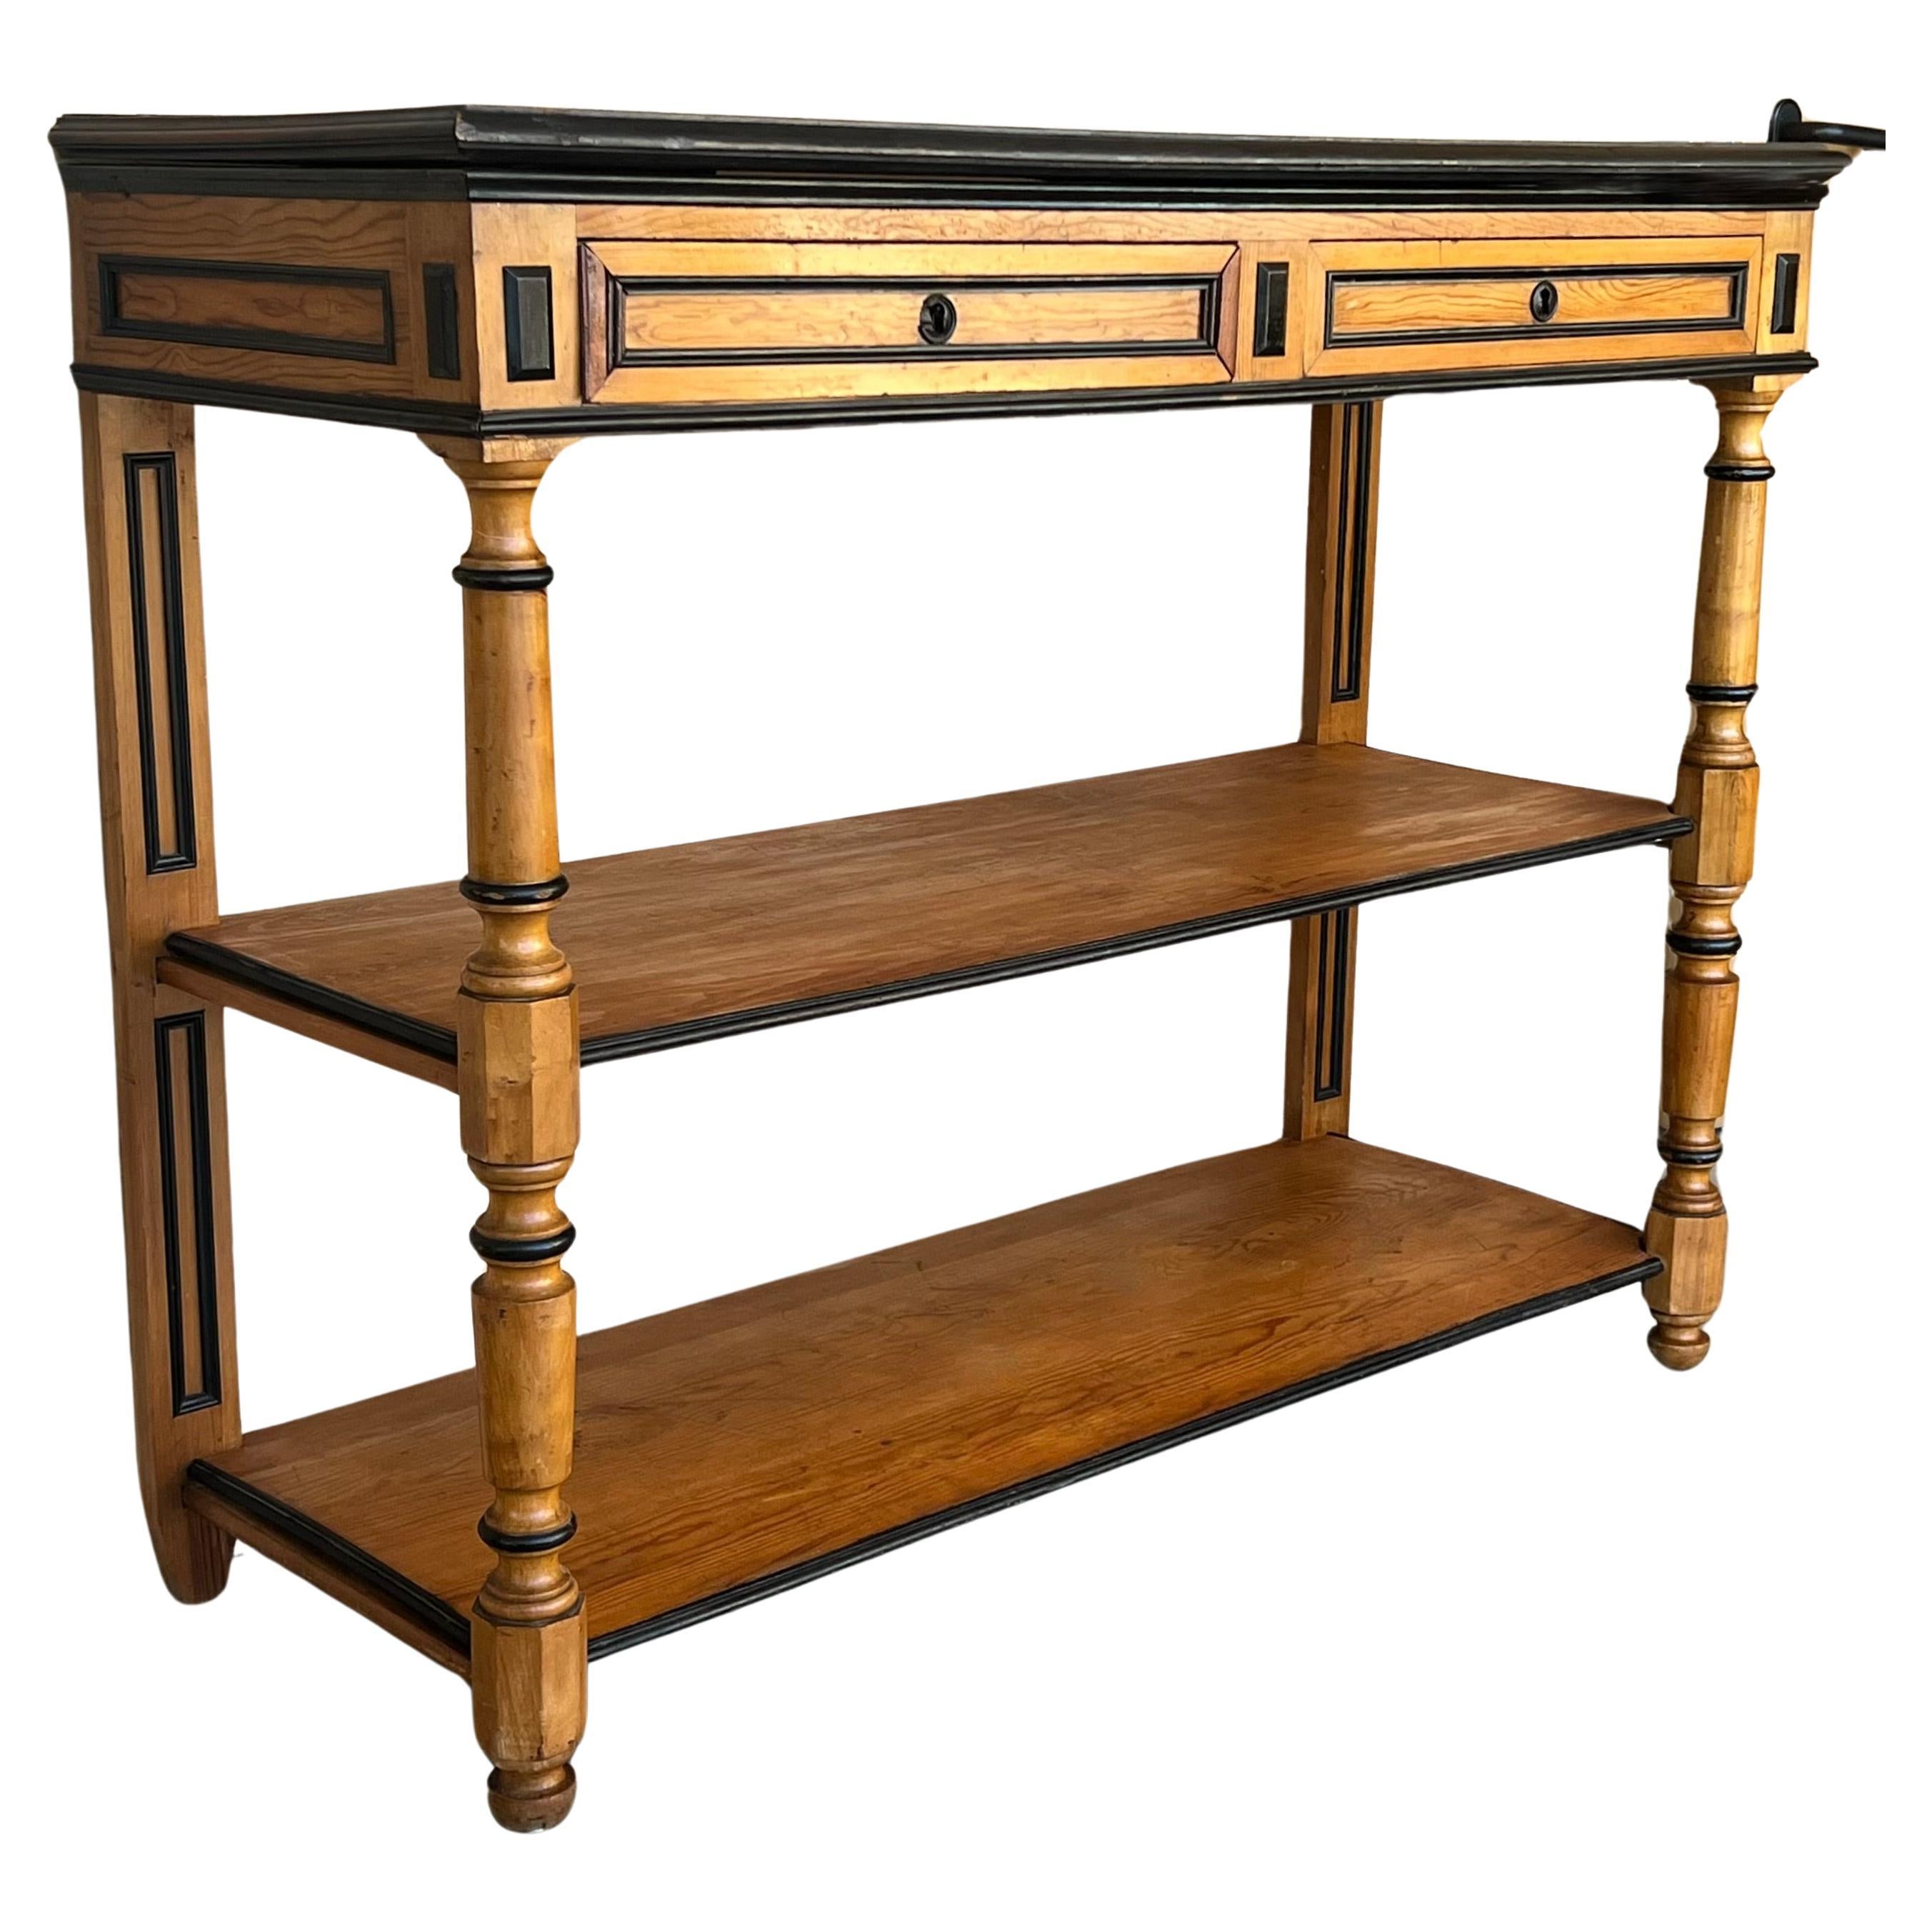 Trouvée en Angleterre, cette table de service en bois fruitier datant de 1900 est dotée d'un plateau avec deux tiroirs munis d'une serrure fonctionnelle et de deux étagères à l'étage inférieur. Pieds tournés décoratifs à l'avant, joliment ébonisés